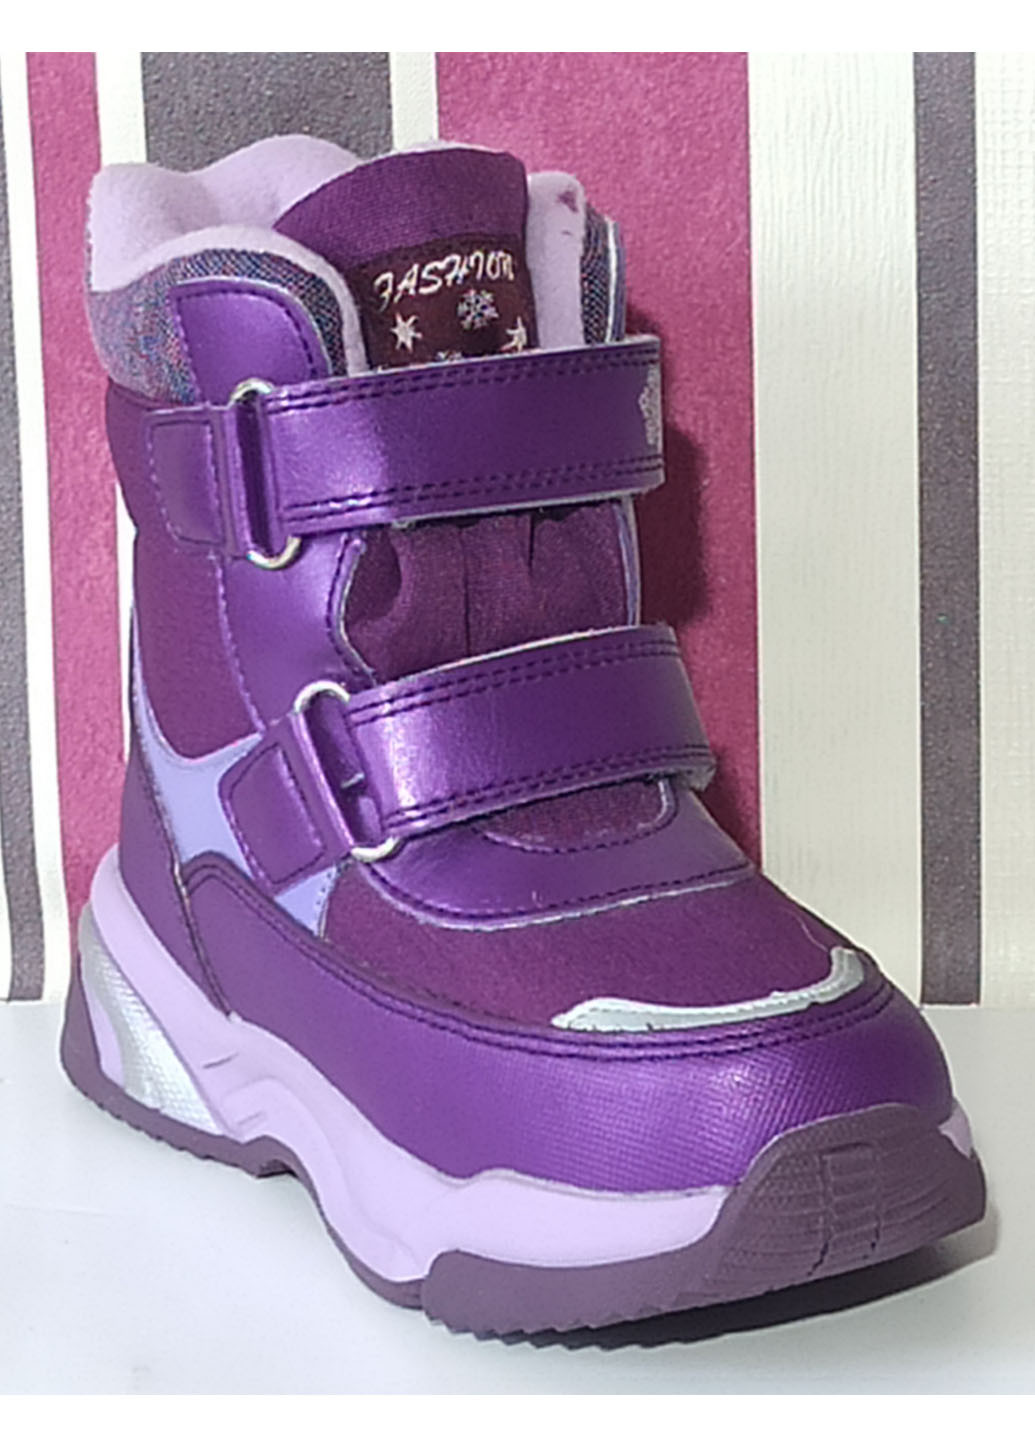 Темно-фиолетовые повседневные зимние детские зимние ботинки для девочки на овчине том м 10244w фиолетовые Tom.M